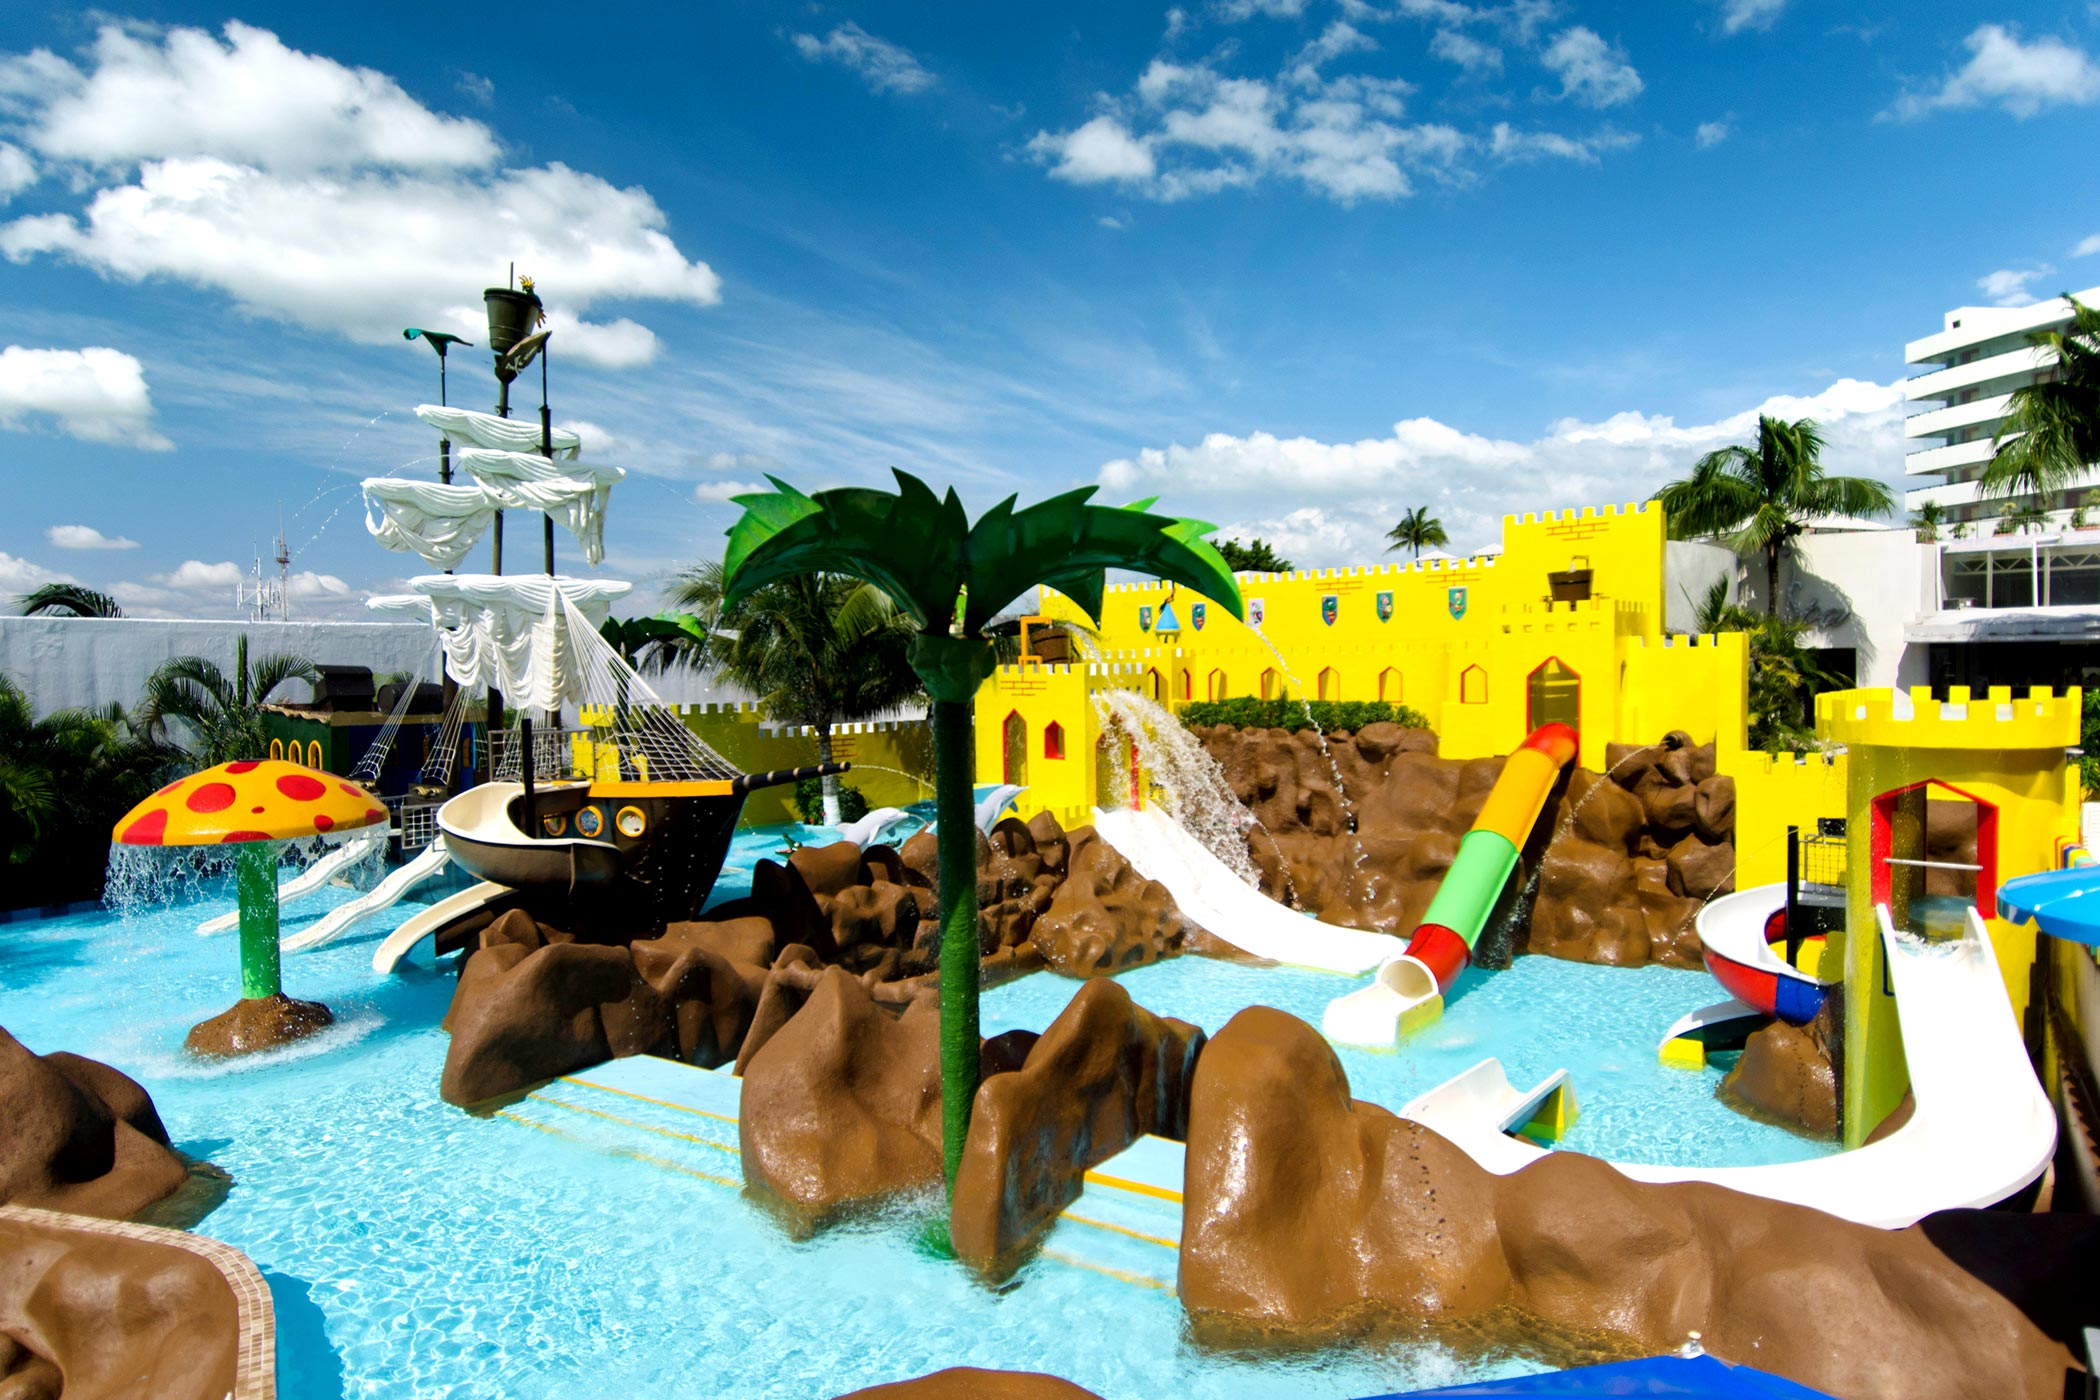 Crown Paradise Club - Cancun - Crown Paradise Club Cancun